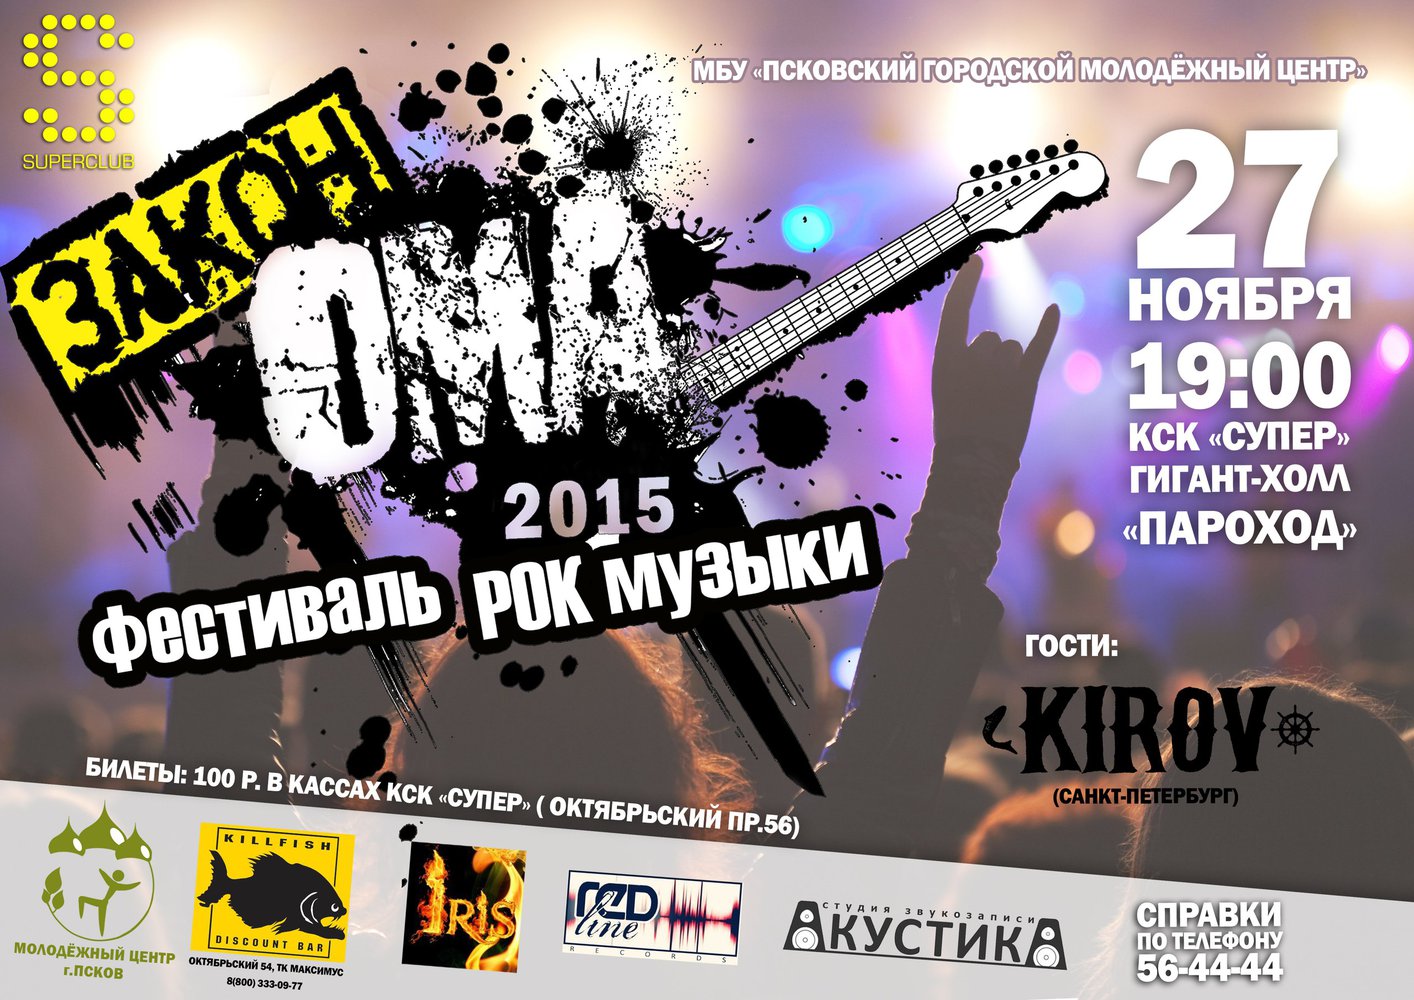 Псковский городской молодежный центр приглашает всех желающих на концерт, который состоится 27 ноября в 19:00. Вход: 100 руб. Билеты можно приобрести в кассе КСК «Супер».